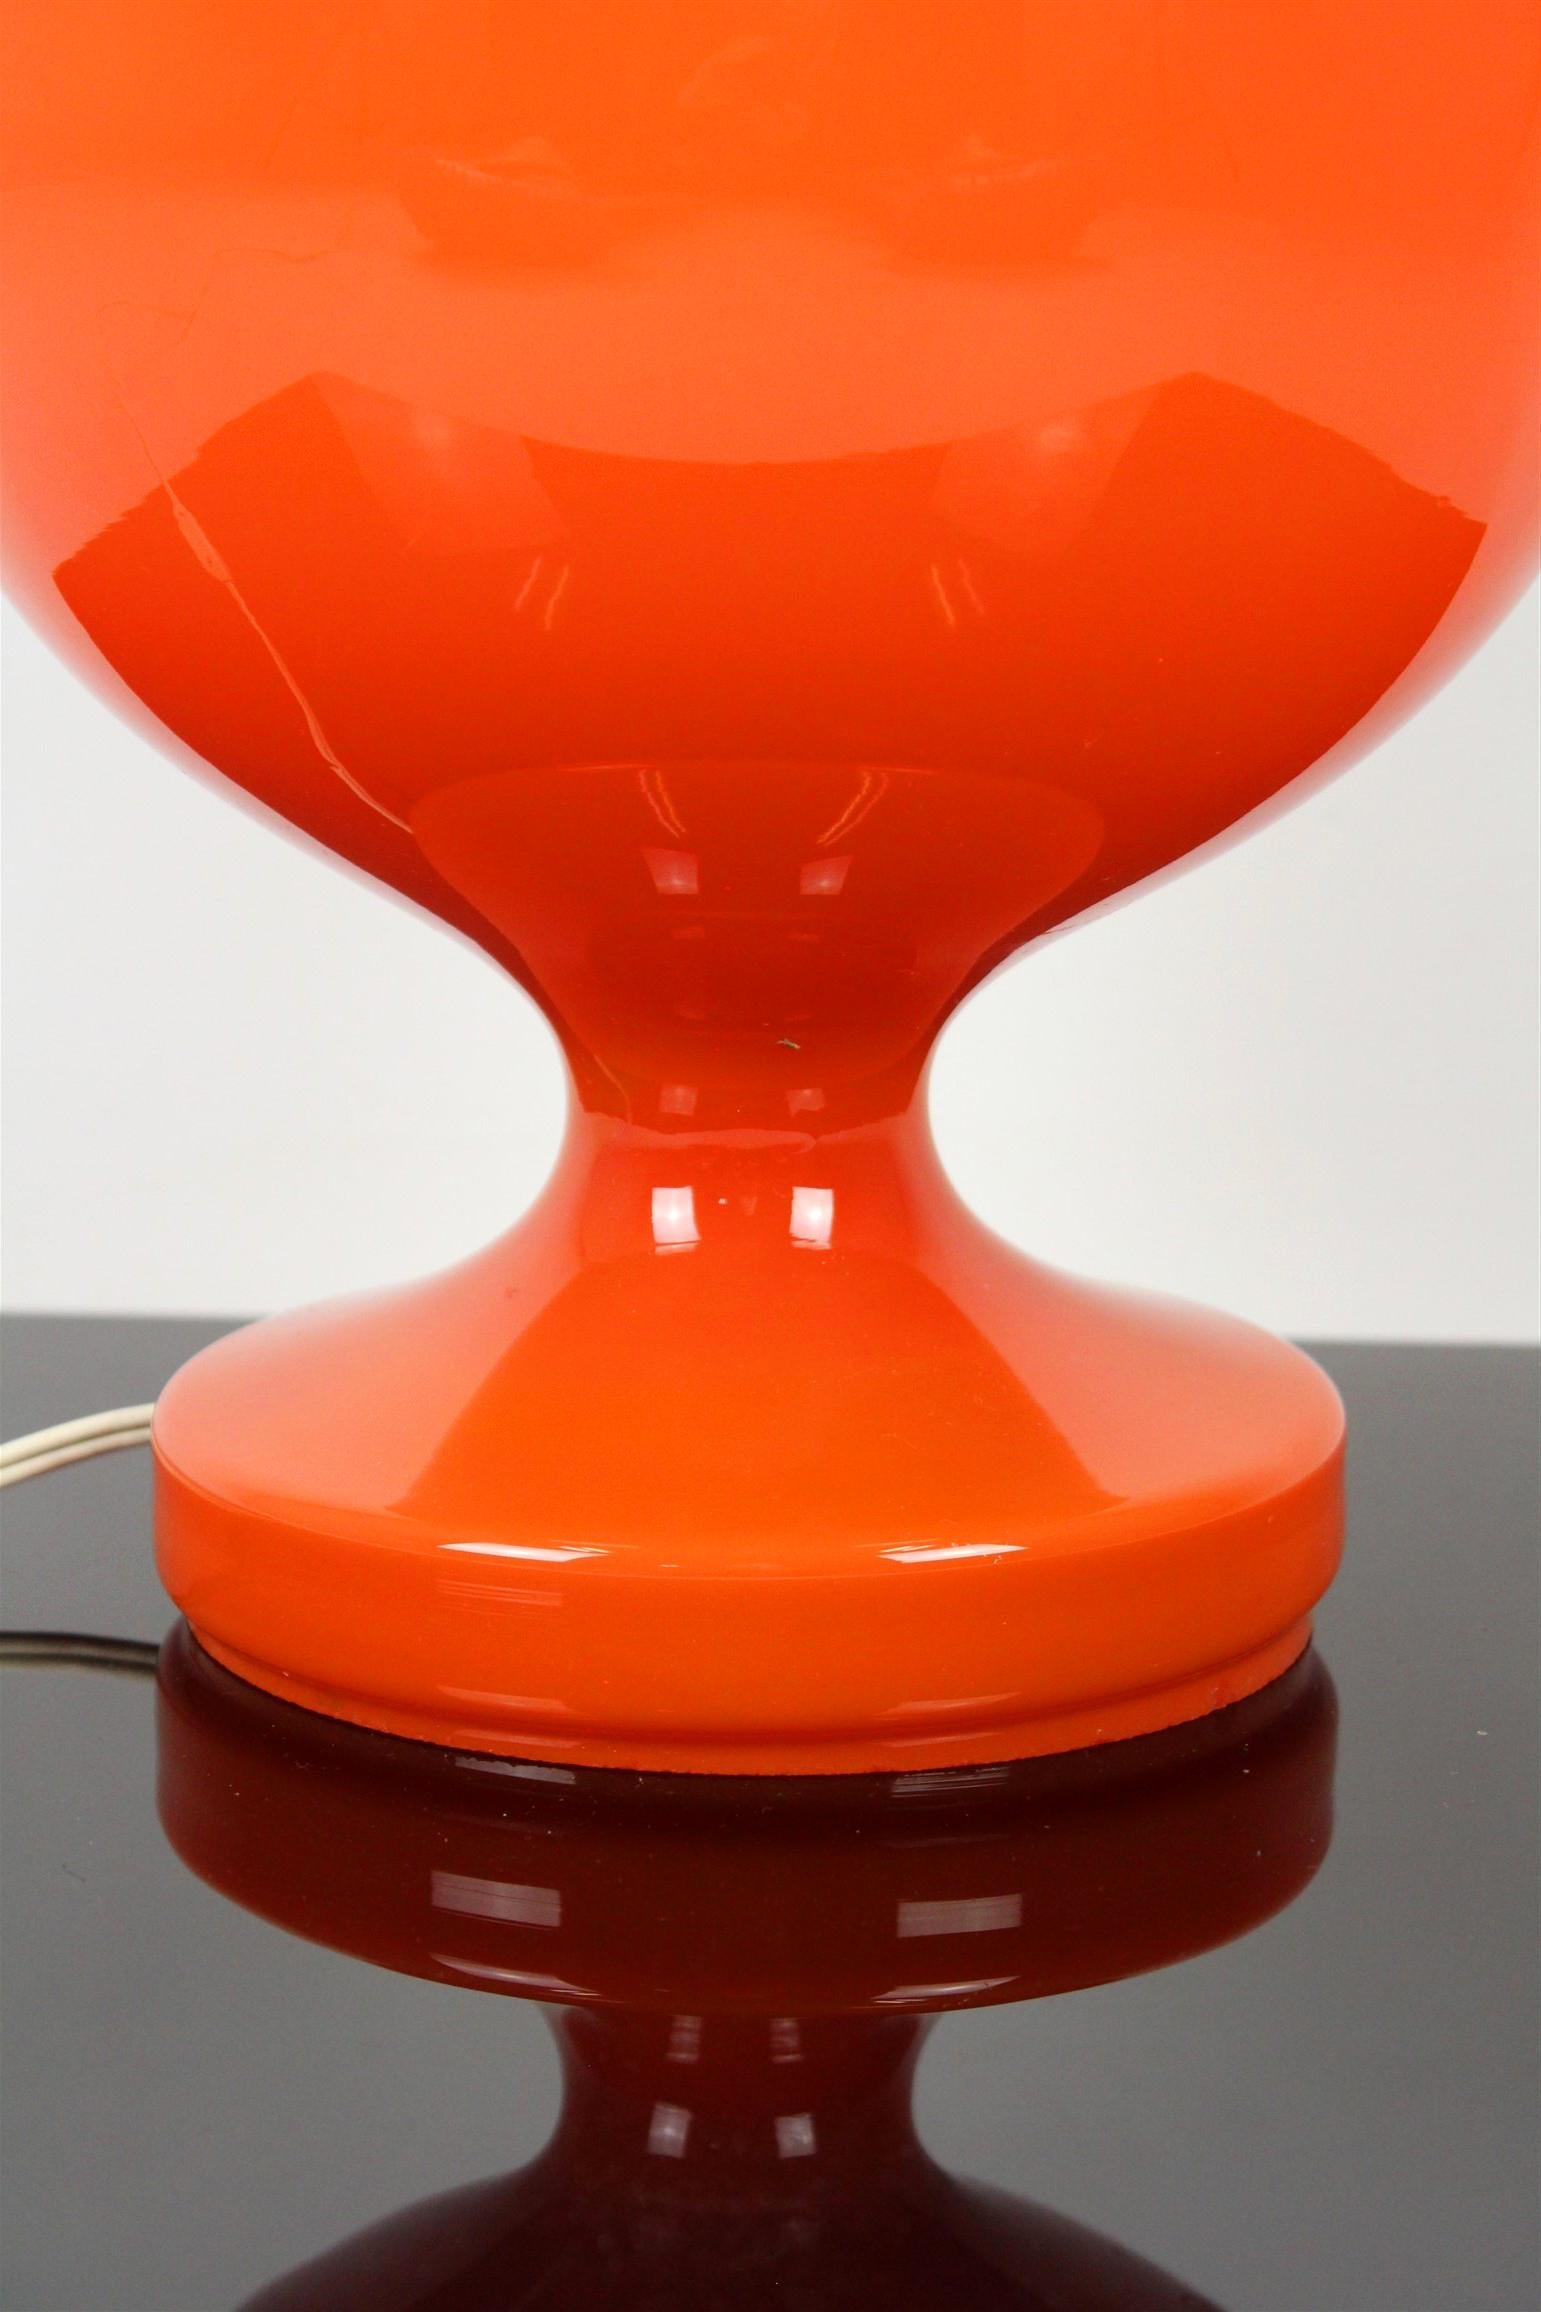 Cette lampe de table en verre a été fabriquée par OPP Jihlava en Tchécoslovaquie dans les années 1970.
La lampe est entièrement fonctionnelle.